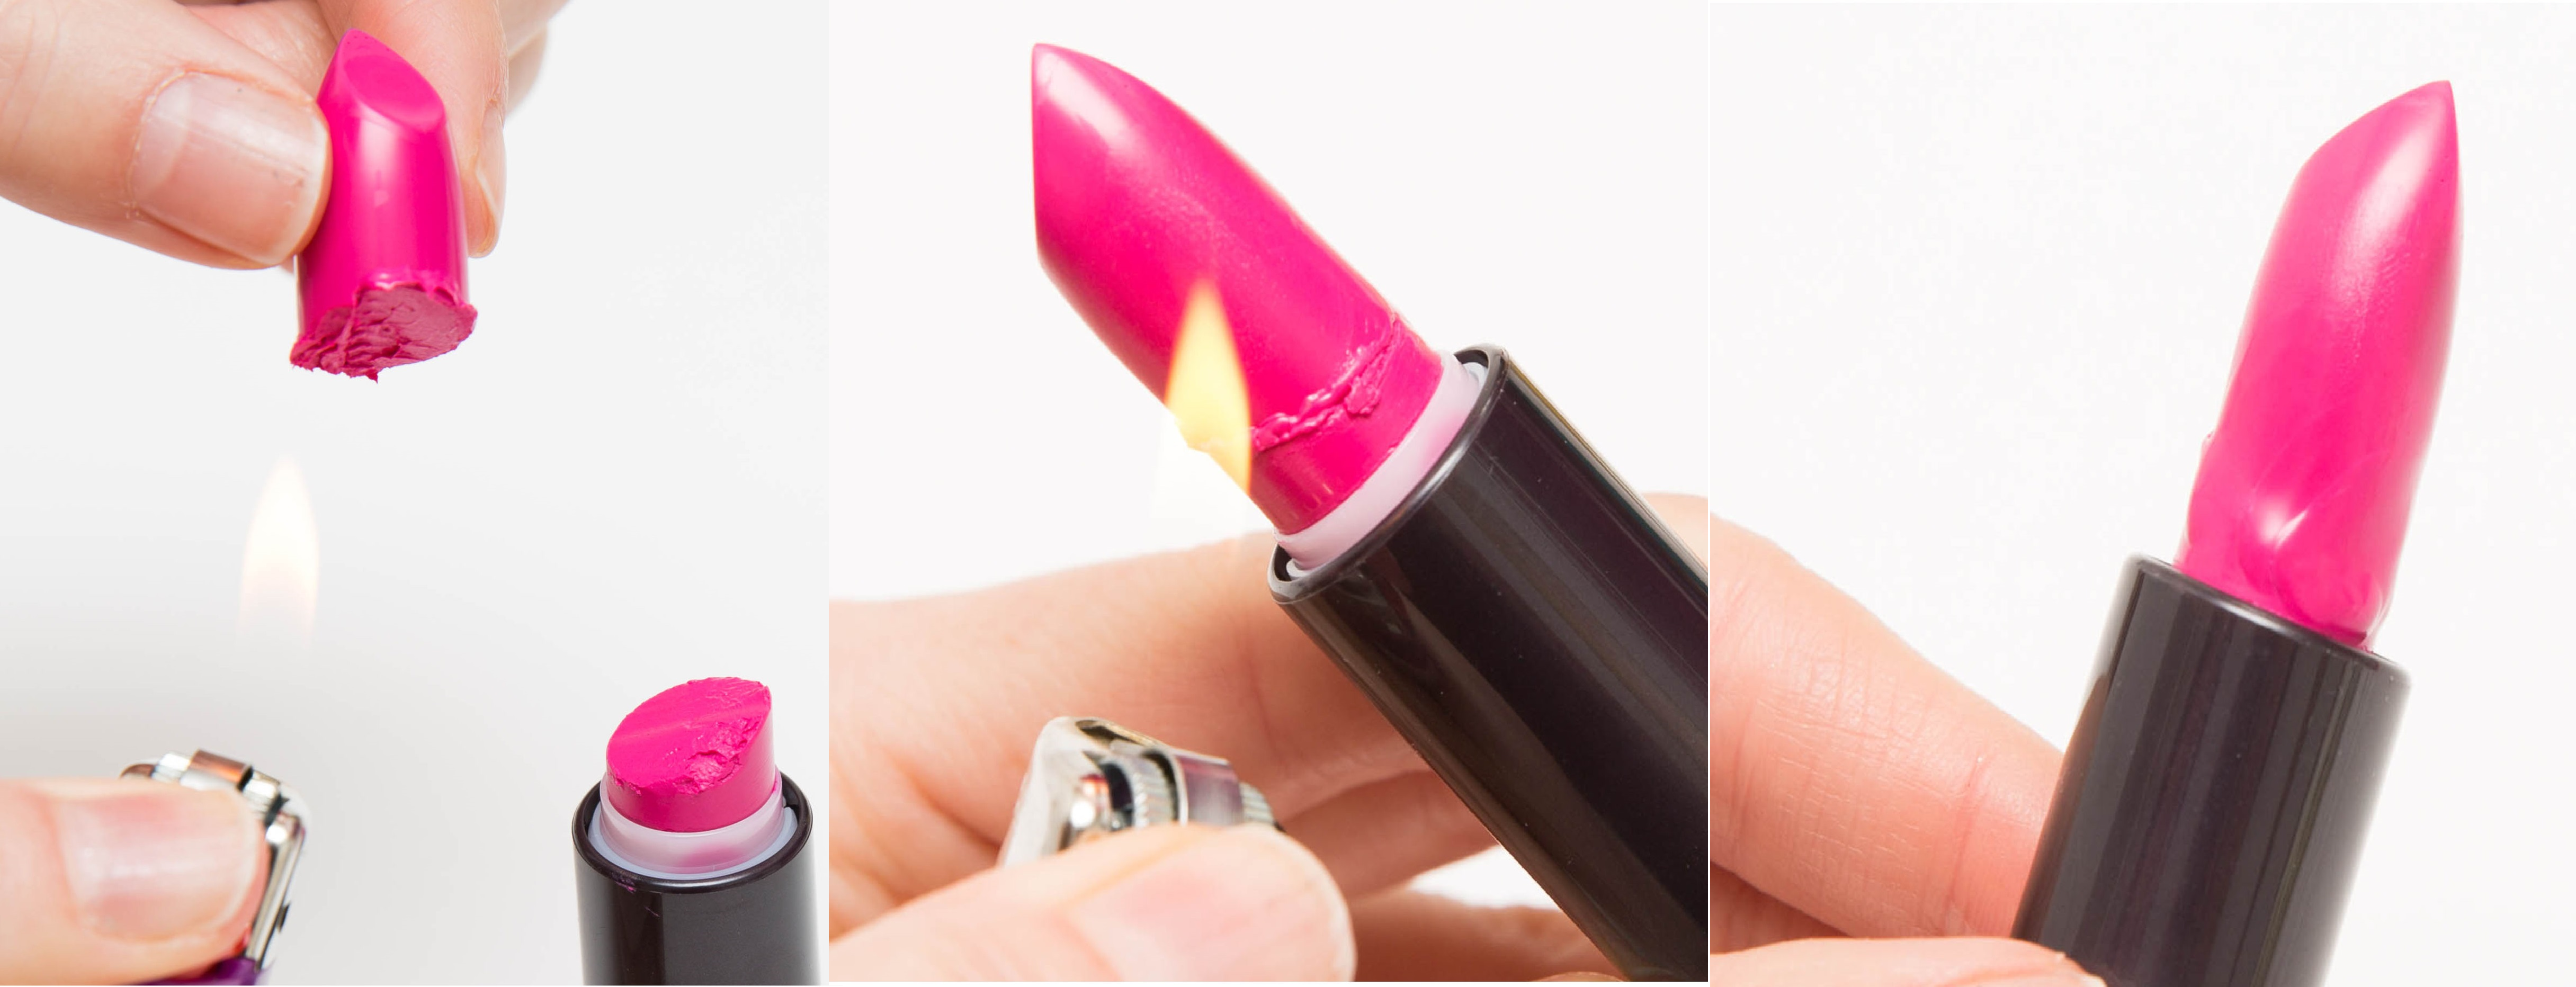 How to fix a broken lipstick